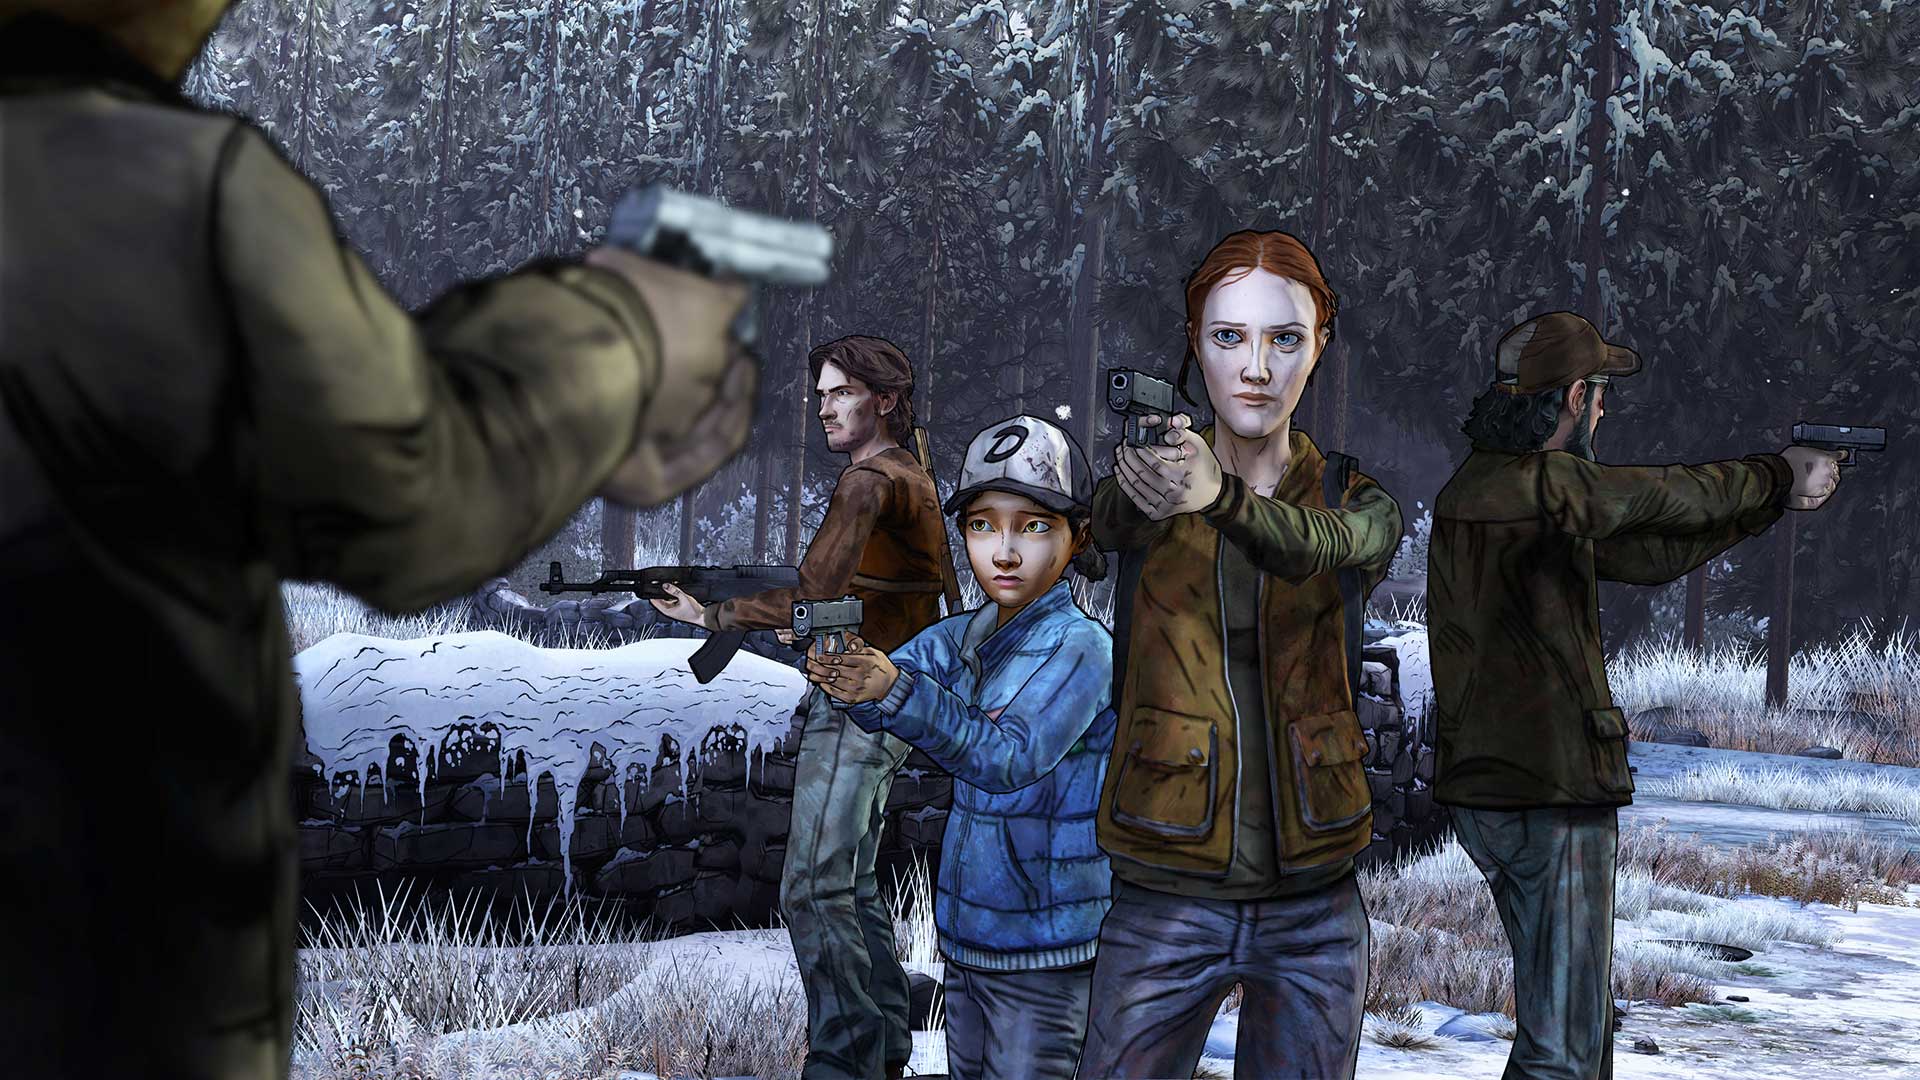 The Walking Dead Season Two PS4 - Comprar en Gamer Man